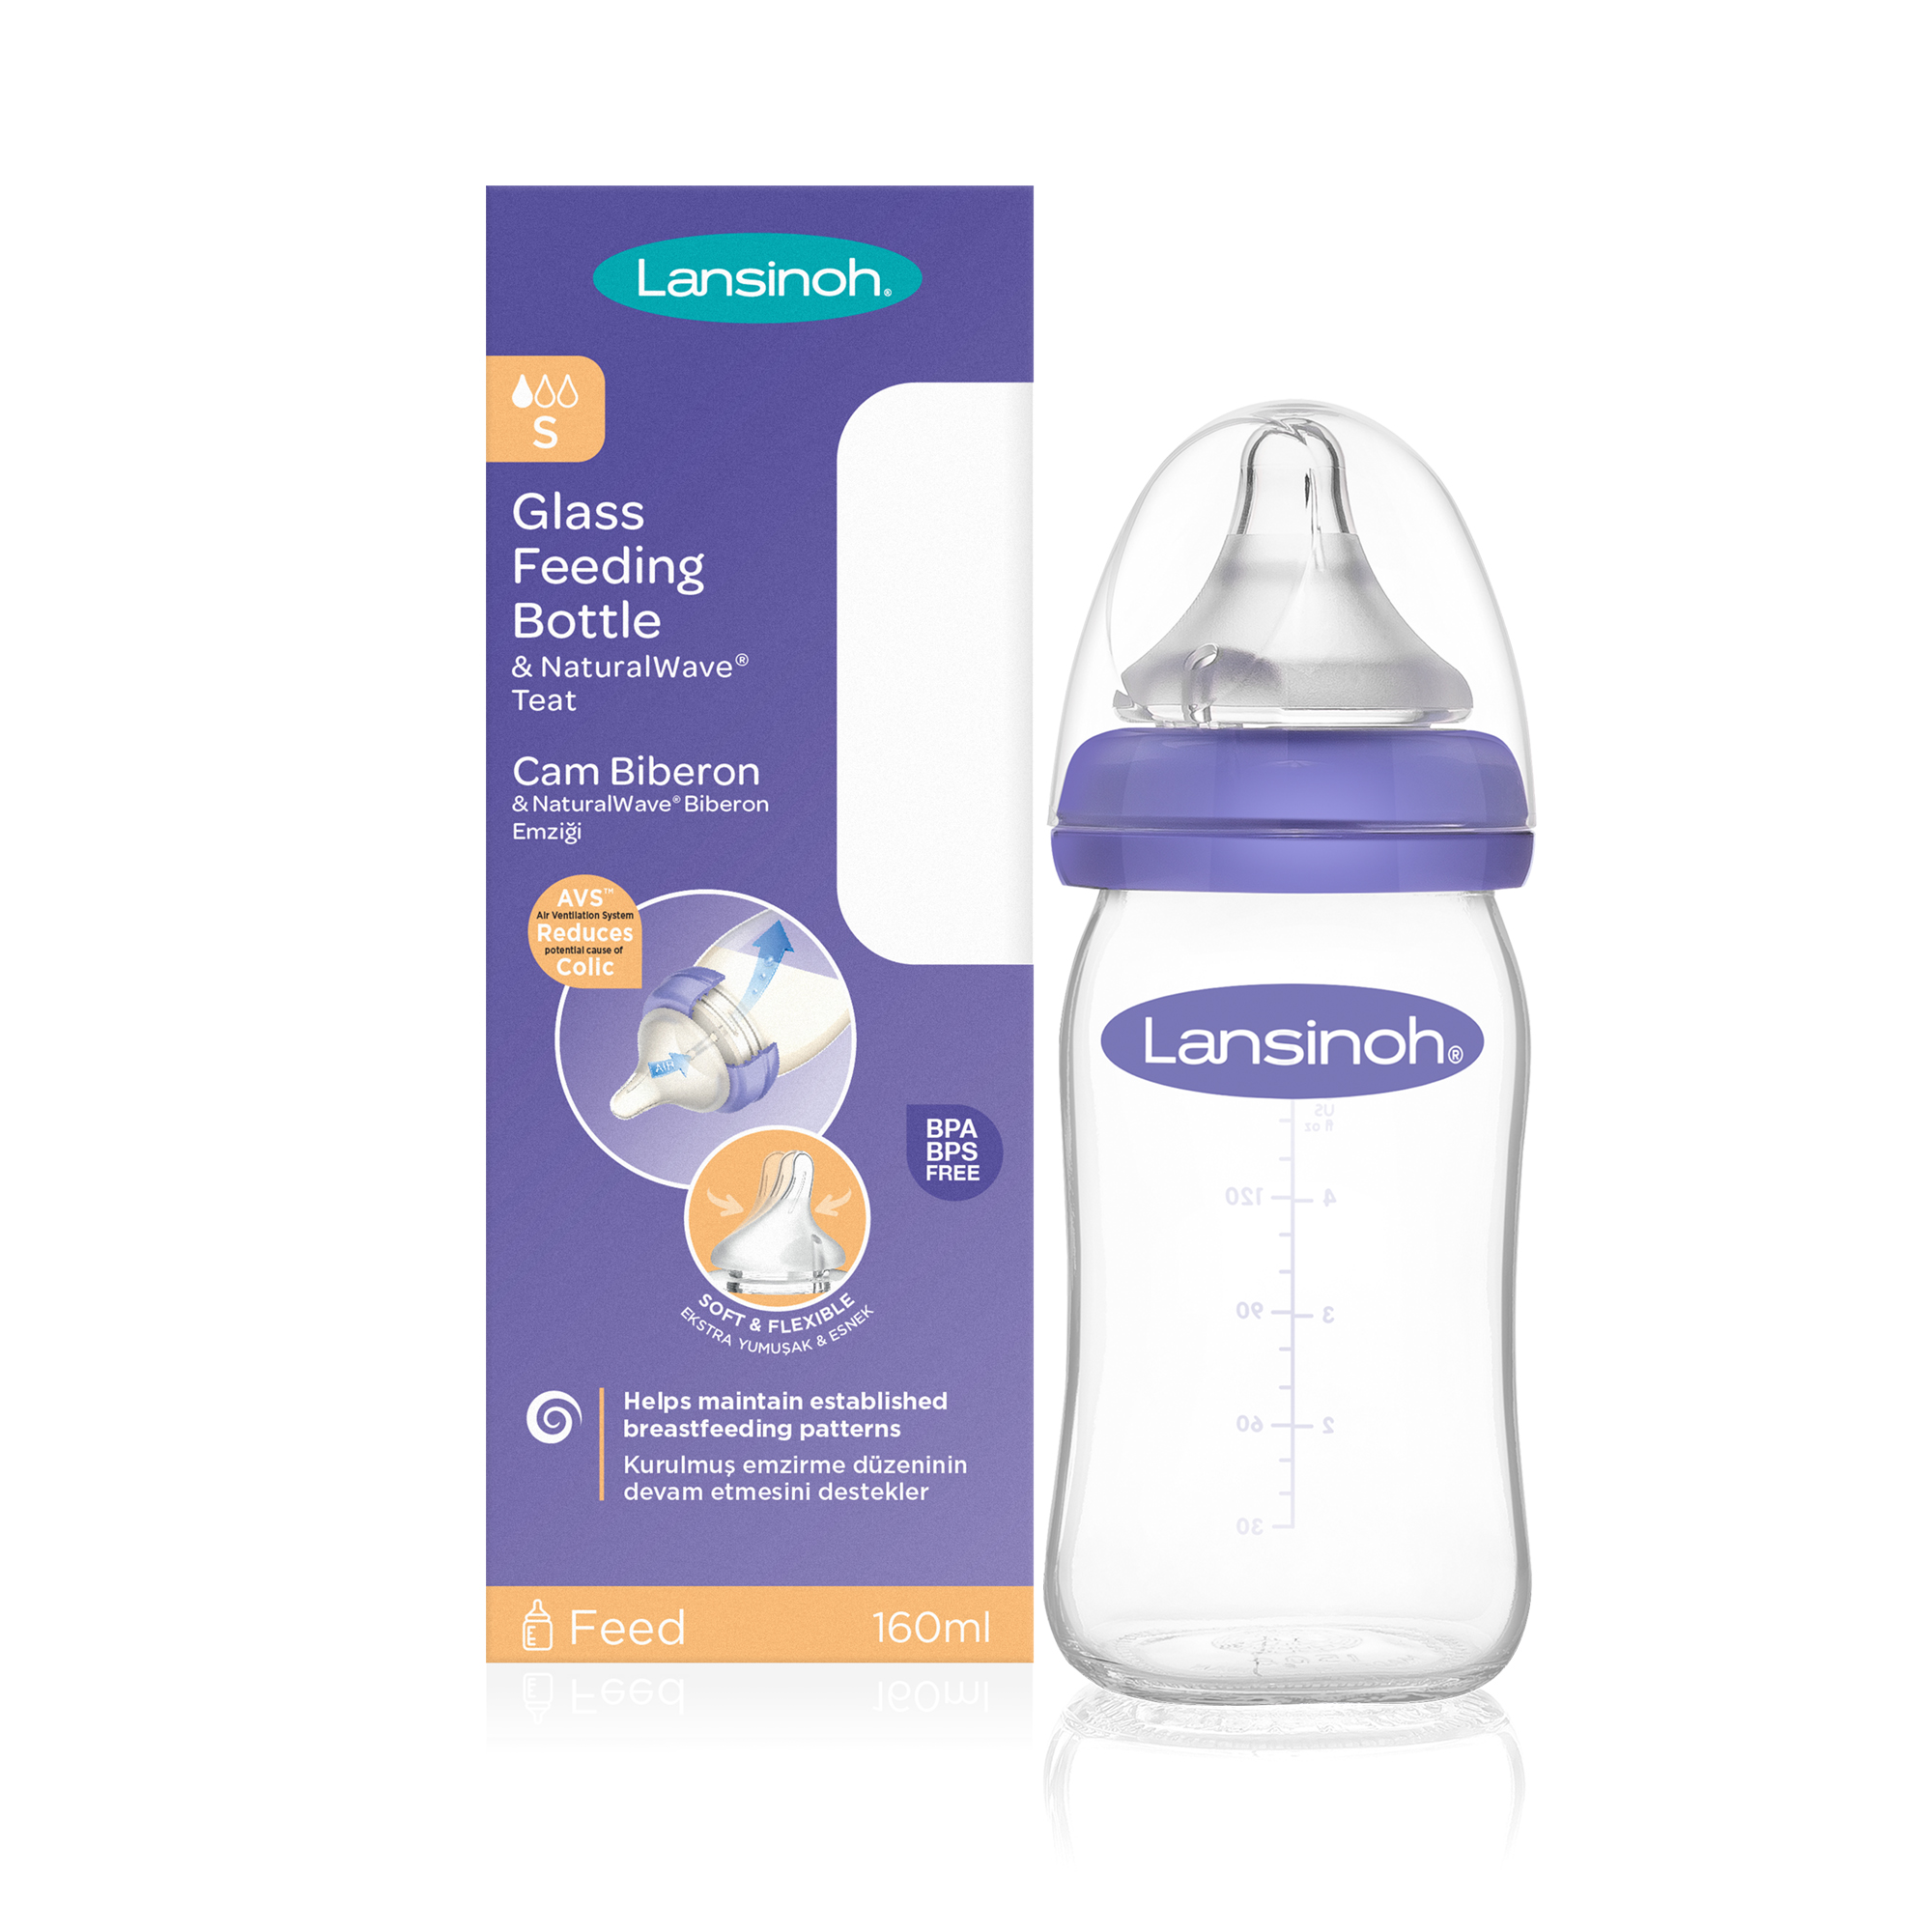 Lansinoh dojčenská fľaša na kŕmenie materským mliekom s NaturalWave cumľom 160ml